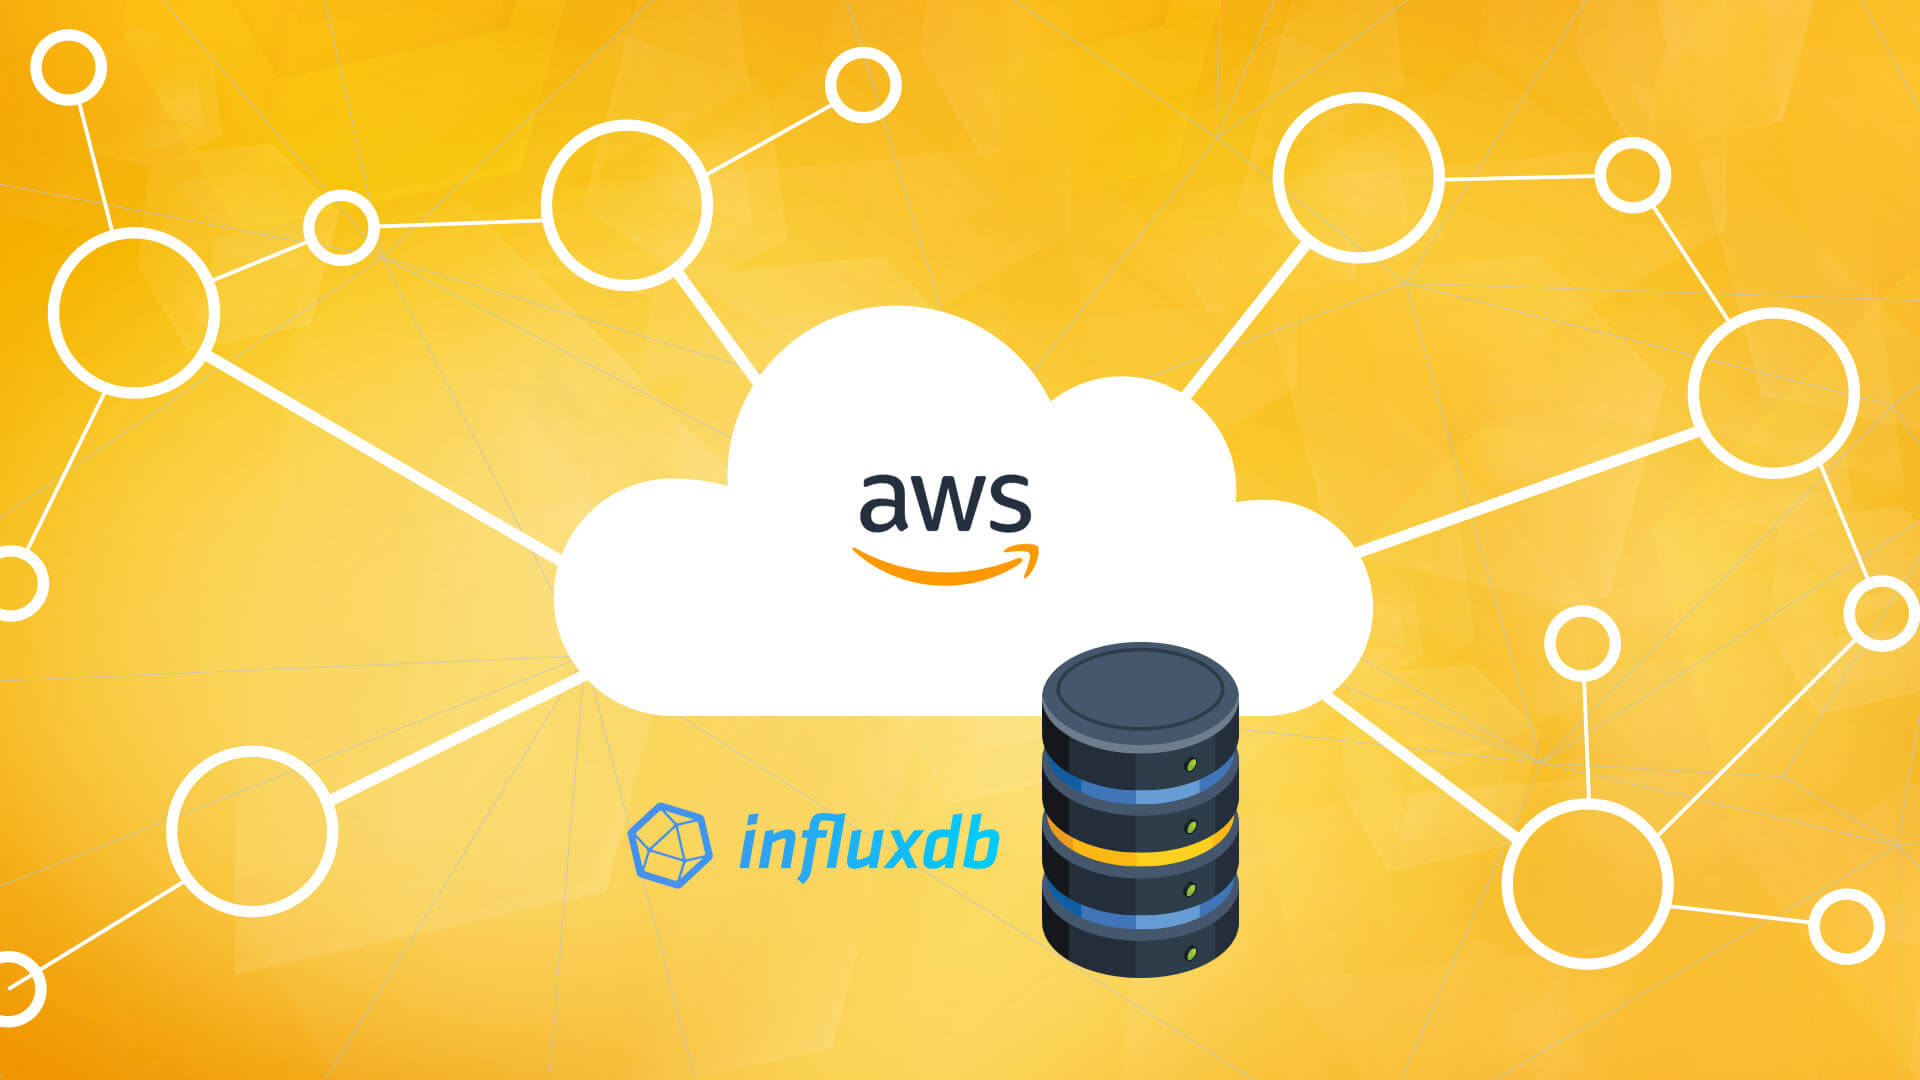 Rozwiązanie High Availability (HA) dla bazy danych InfluxDB w oparciu o chmurę Amazon Web Services